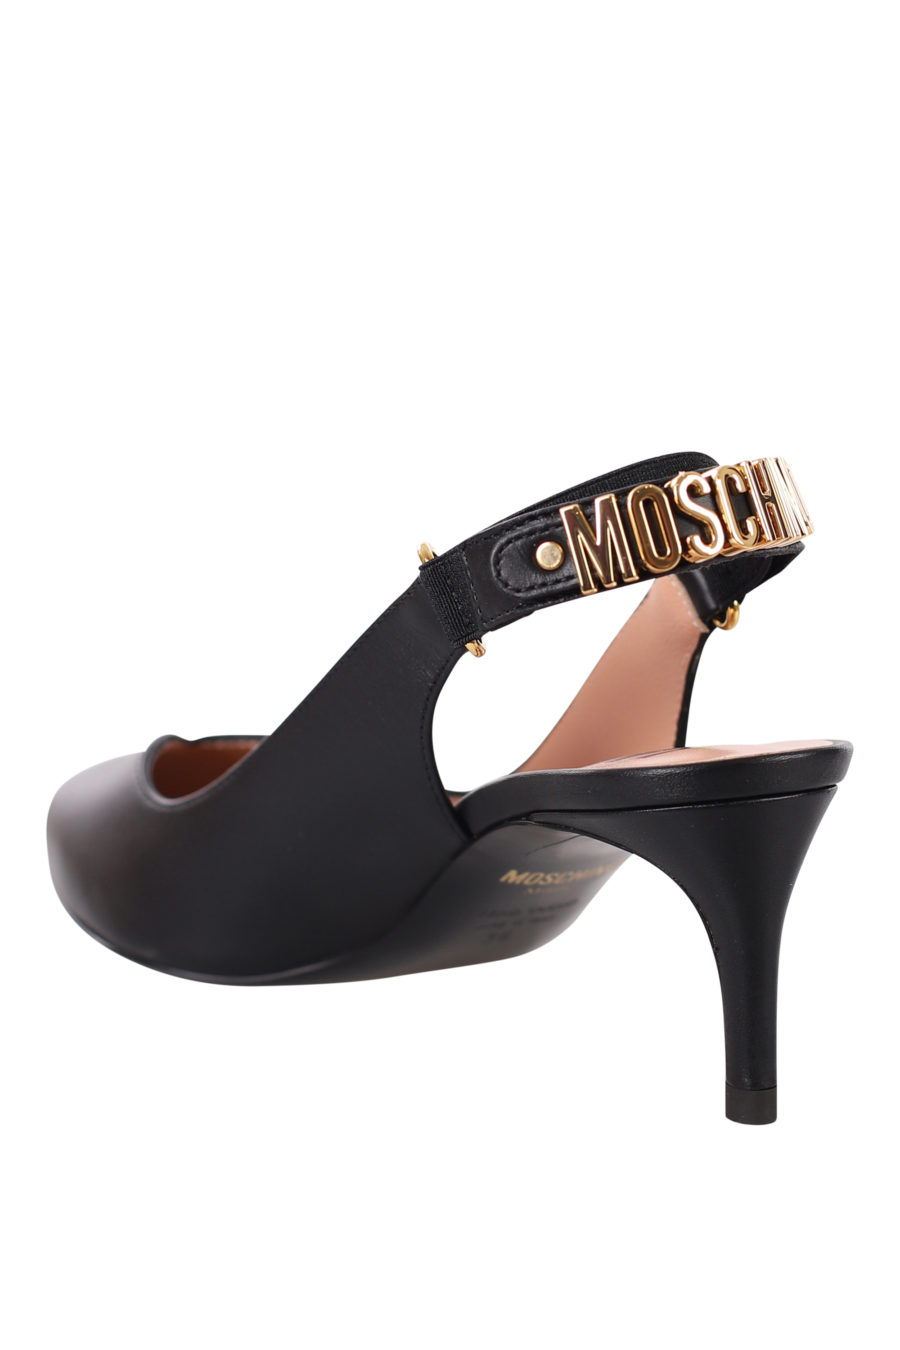 Black heels - IMG 0383